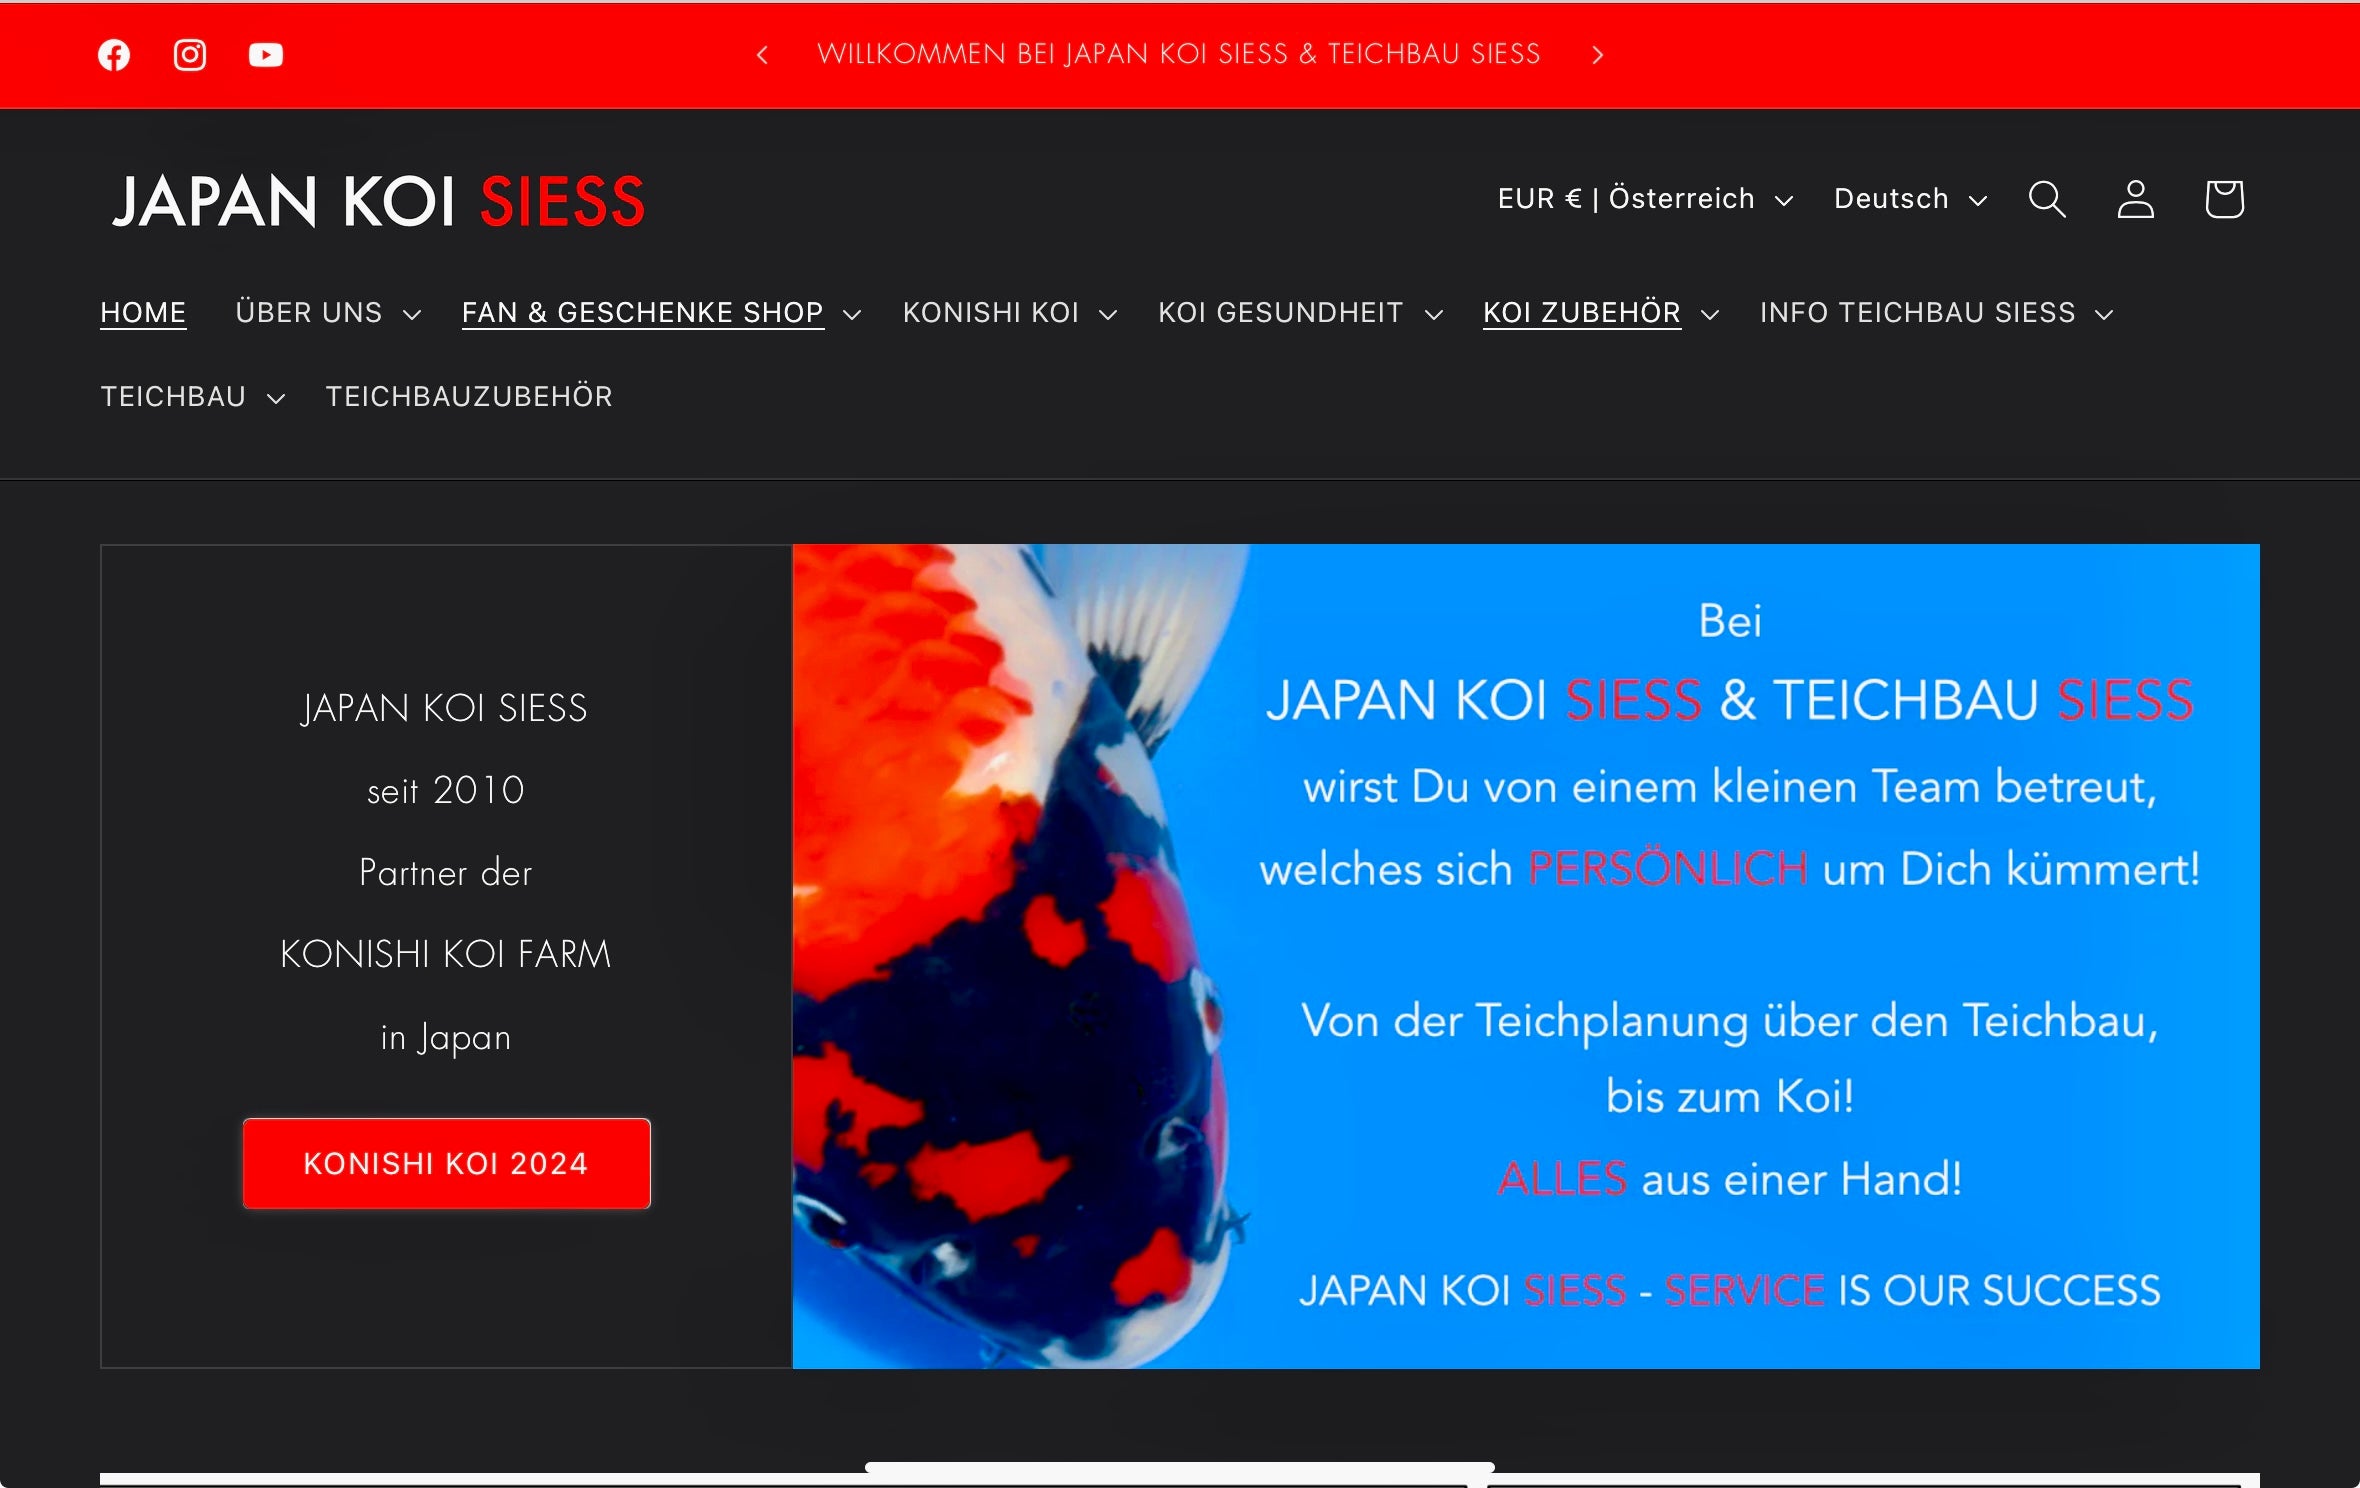 (c) Japan-koi-siess.com